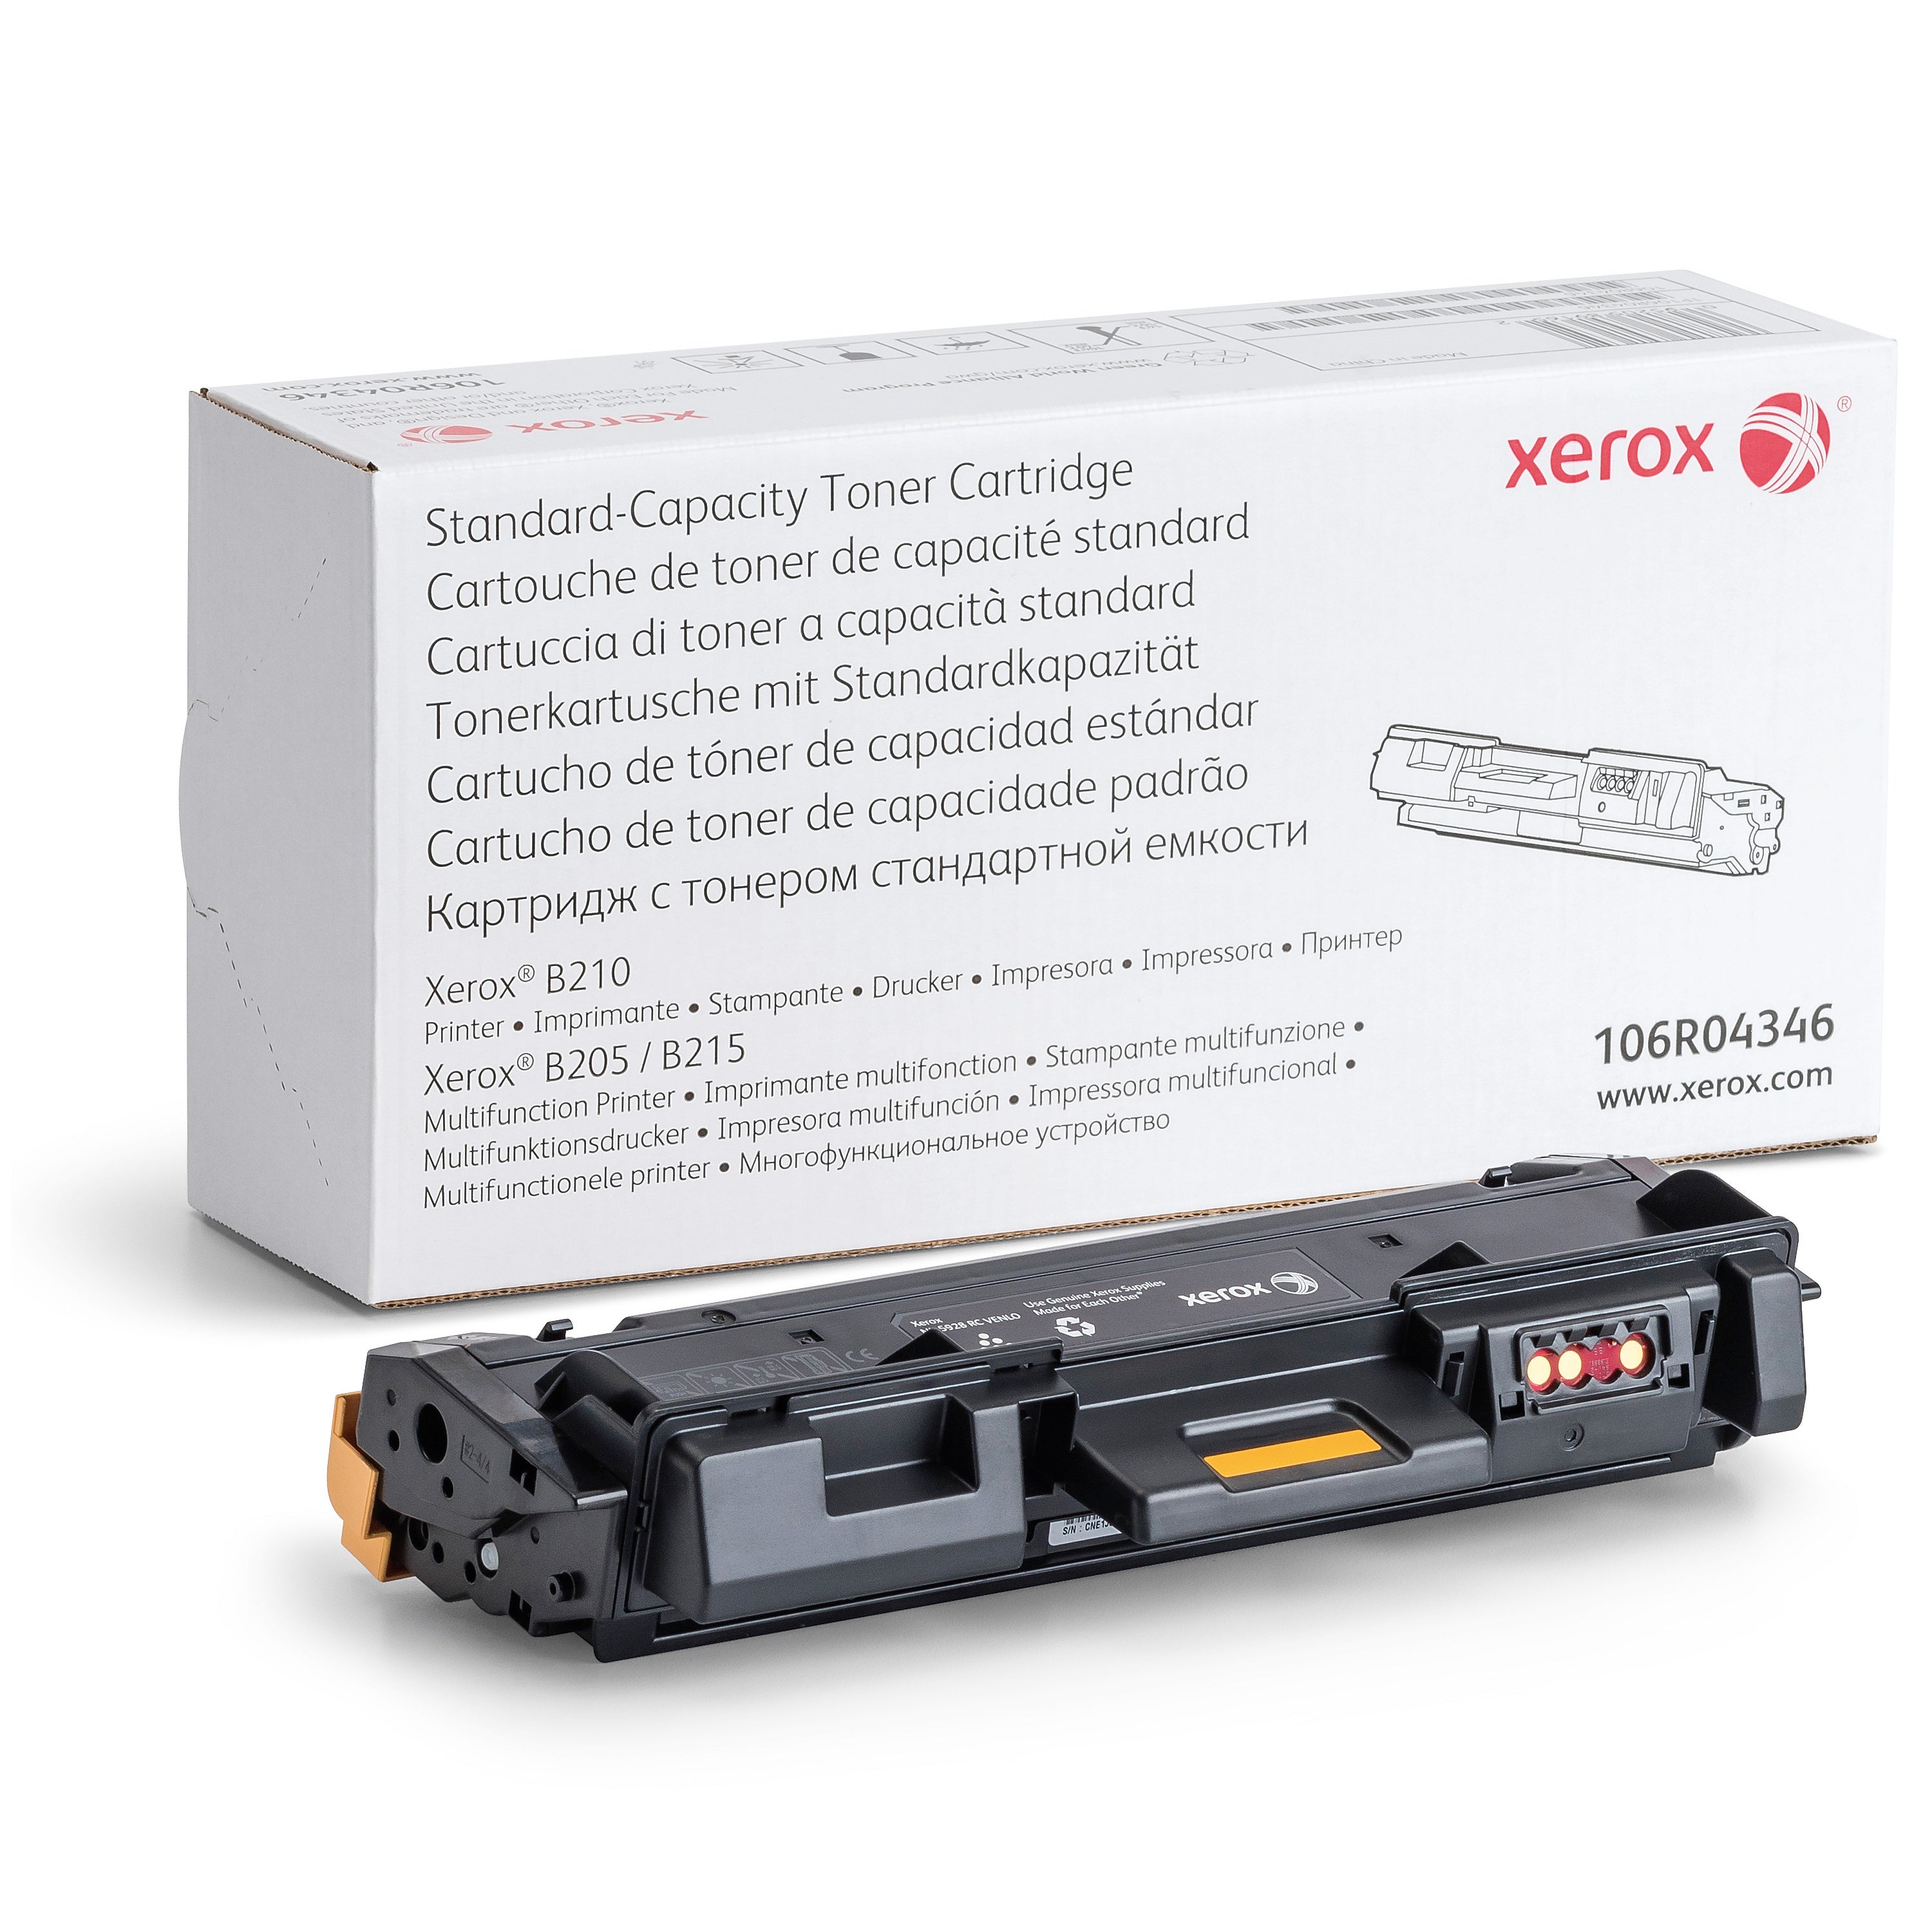 Absolute Toner Genuine Xerox 106R04346 Black Toner Cartridge For B205/B210/B215 Laser Printers | Original OEM Original Xerox Cartridges